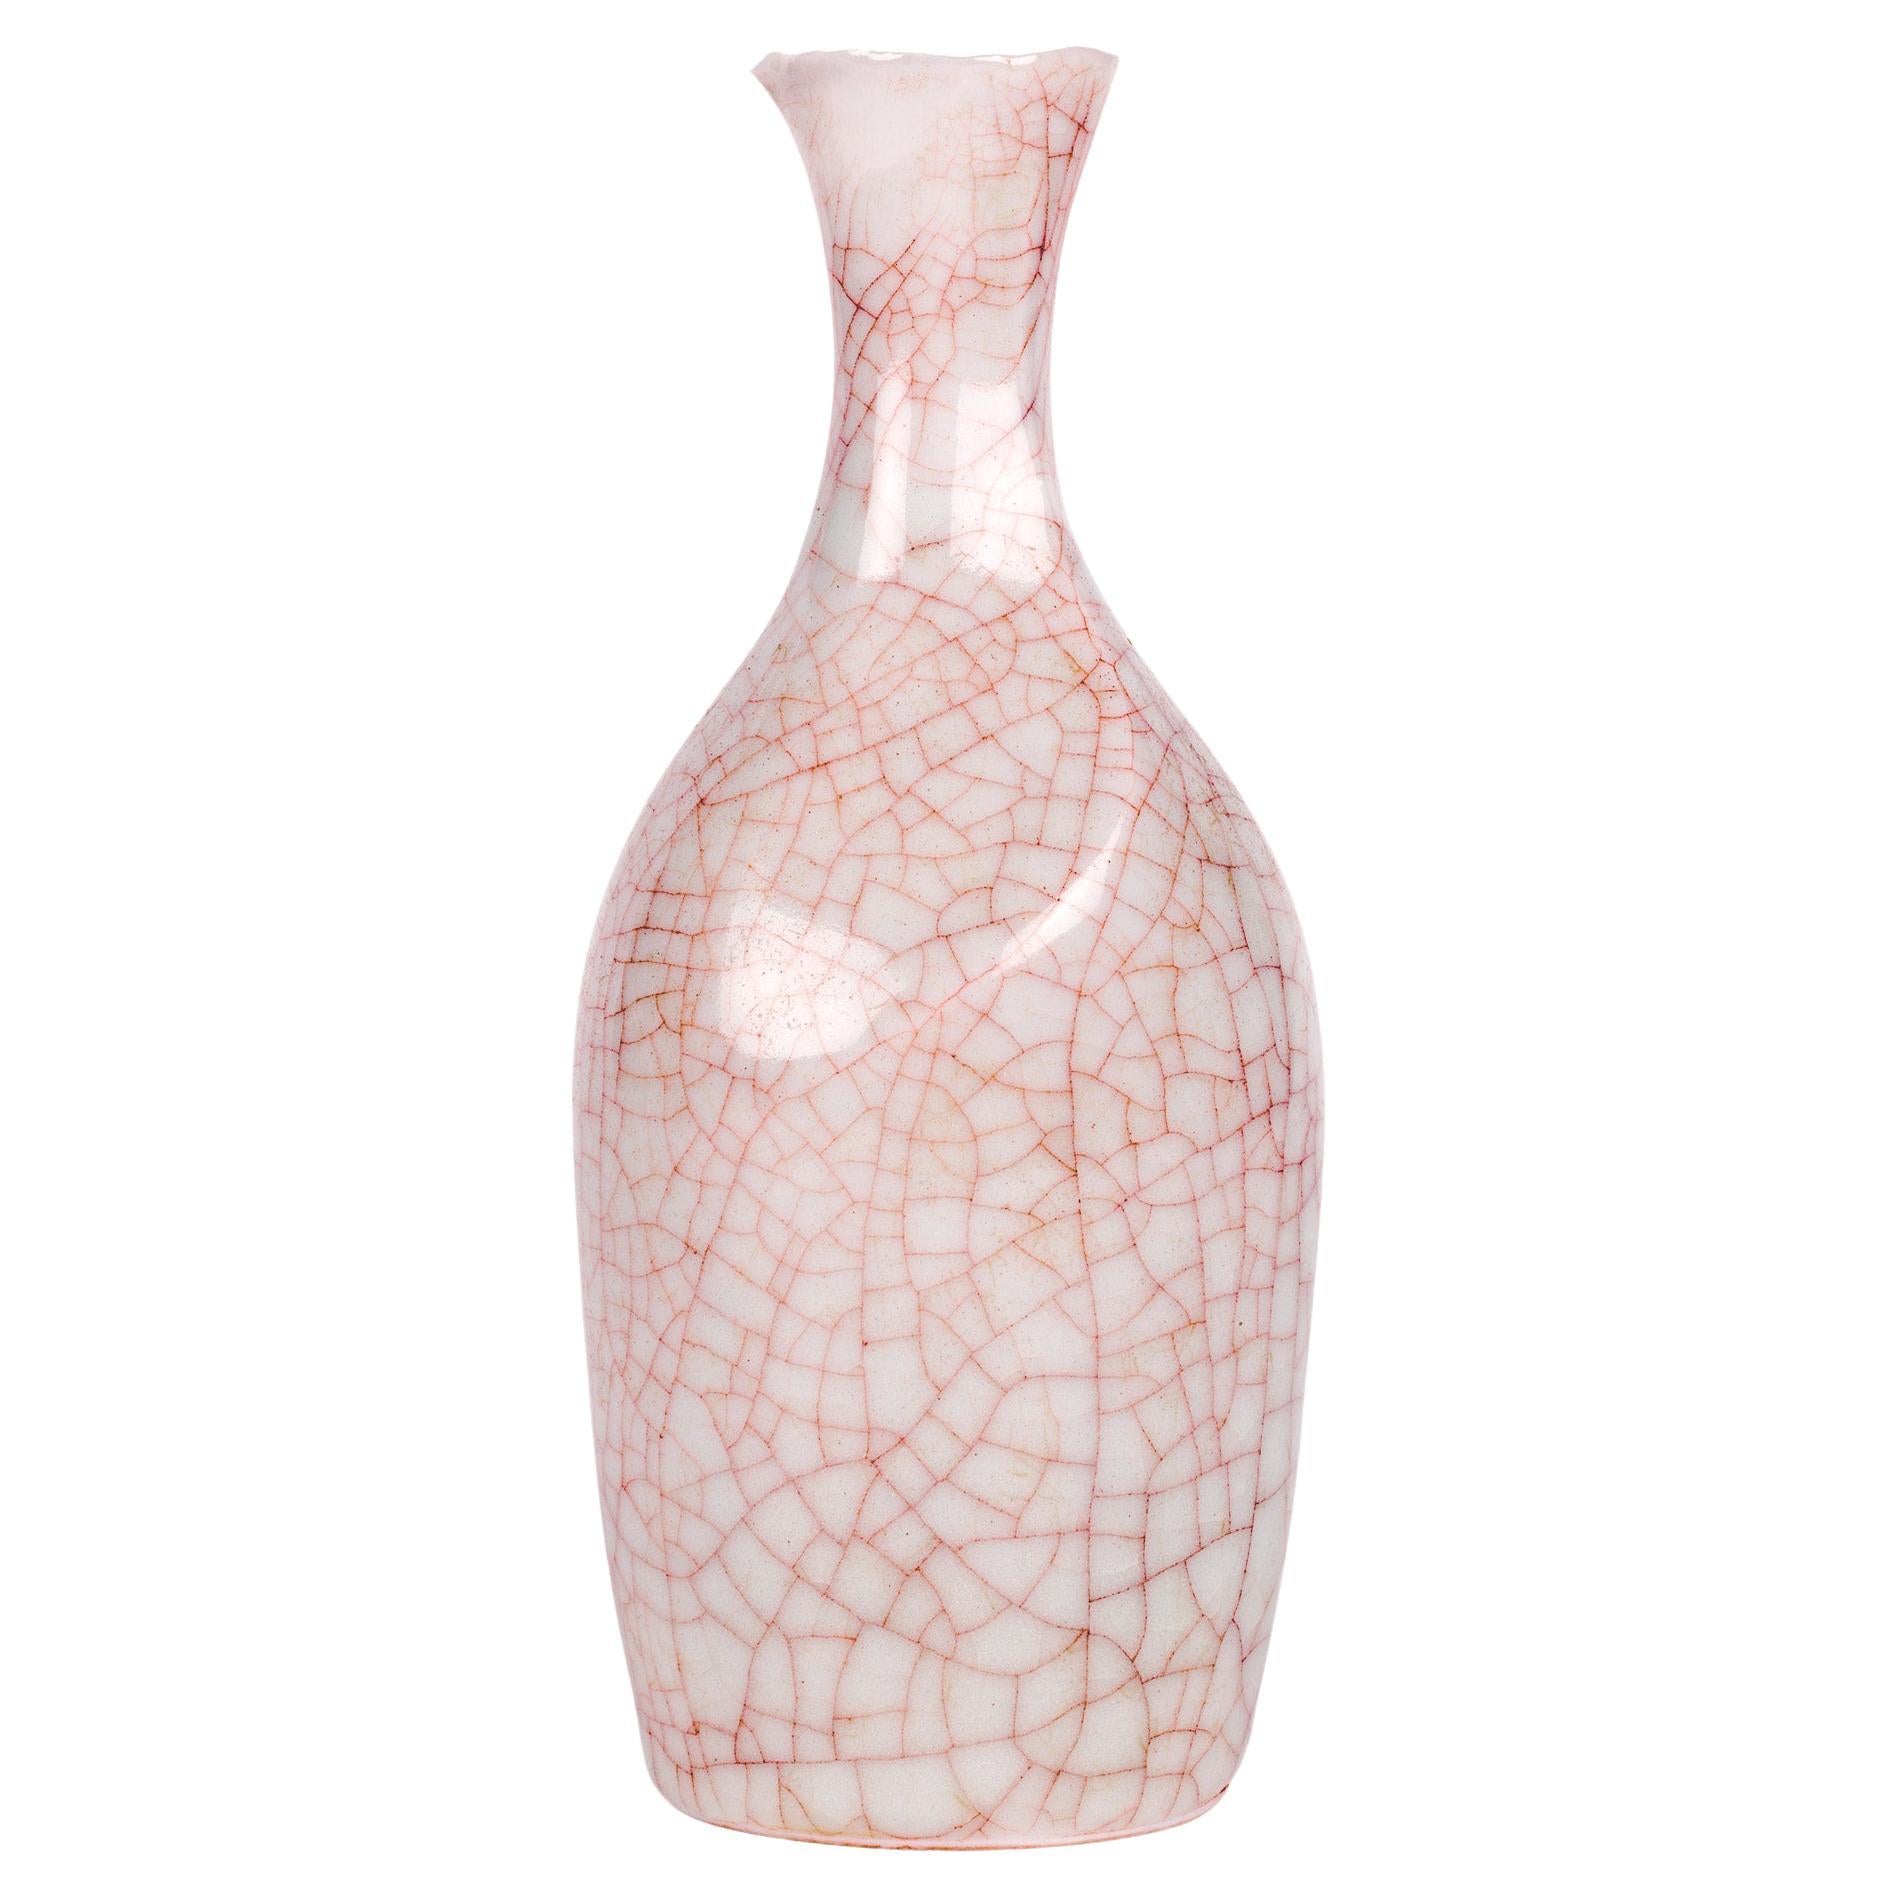 Sonia Lewis Studio Ceramic Craquelure Glazed Bottle Vase For Sale